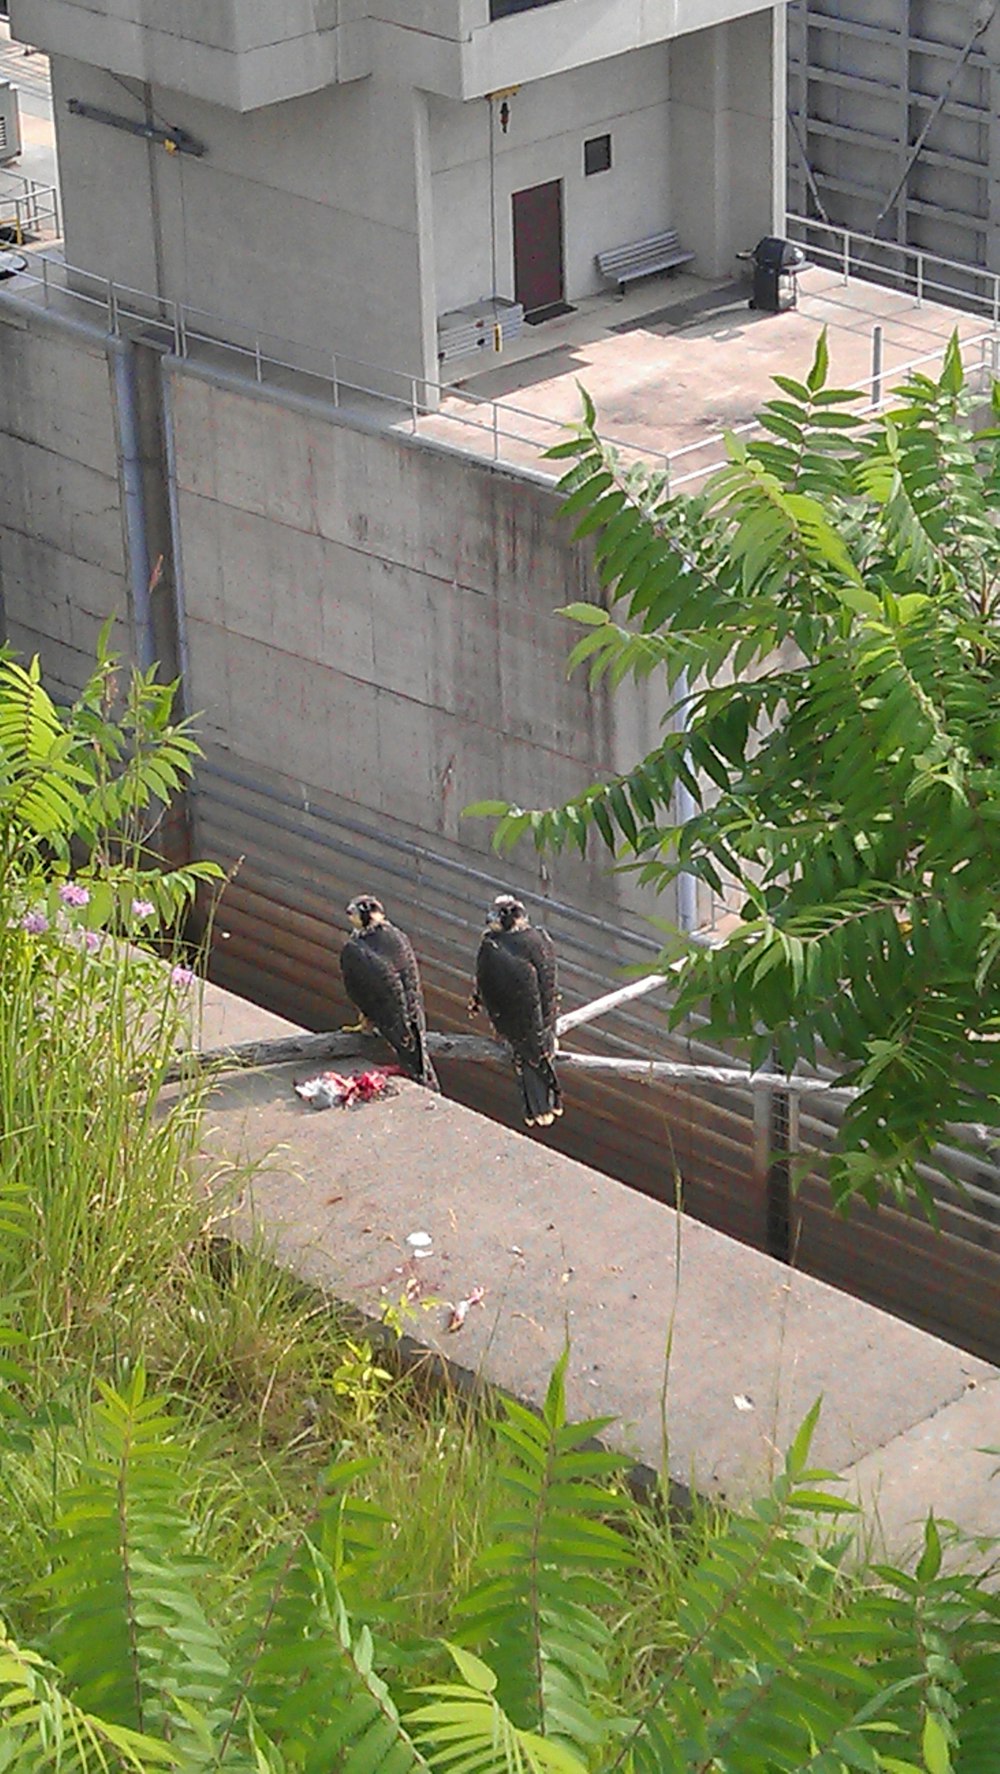 a couple of birds on a ledge